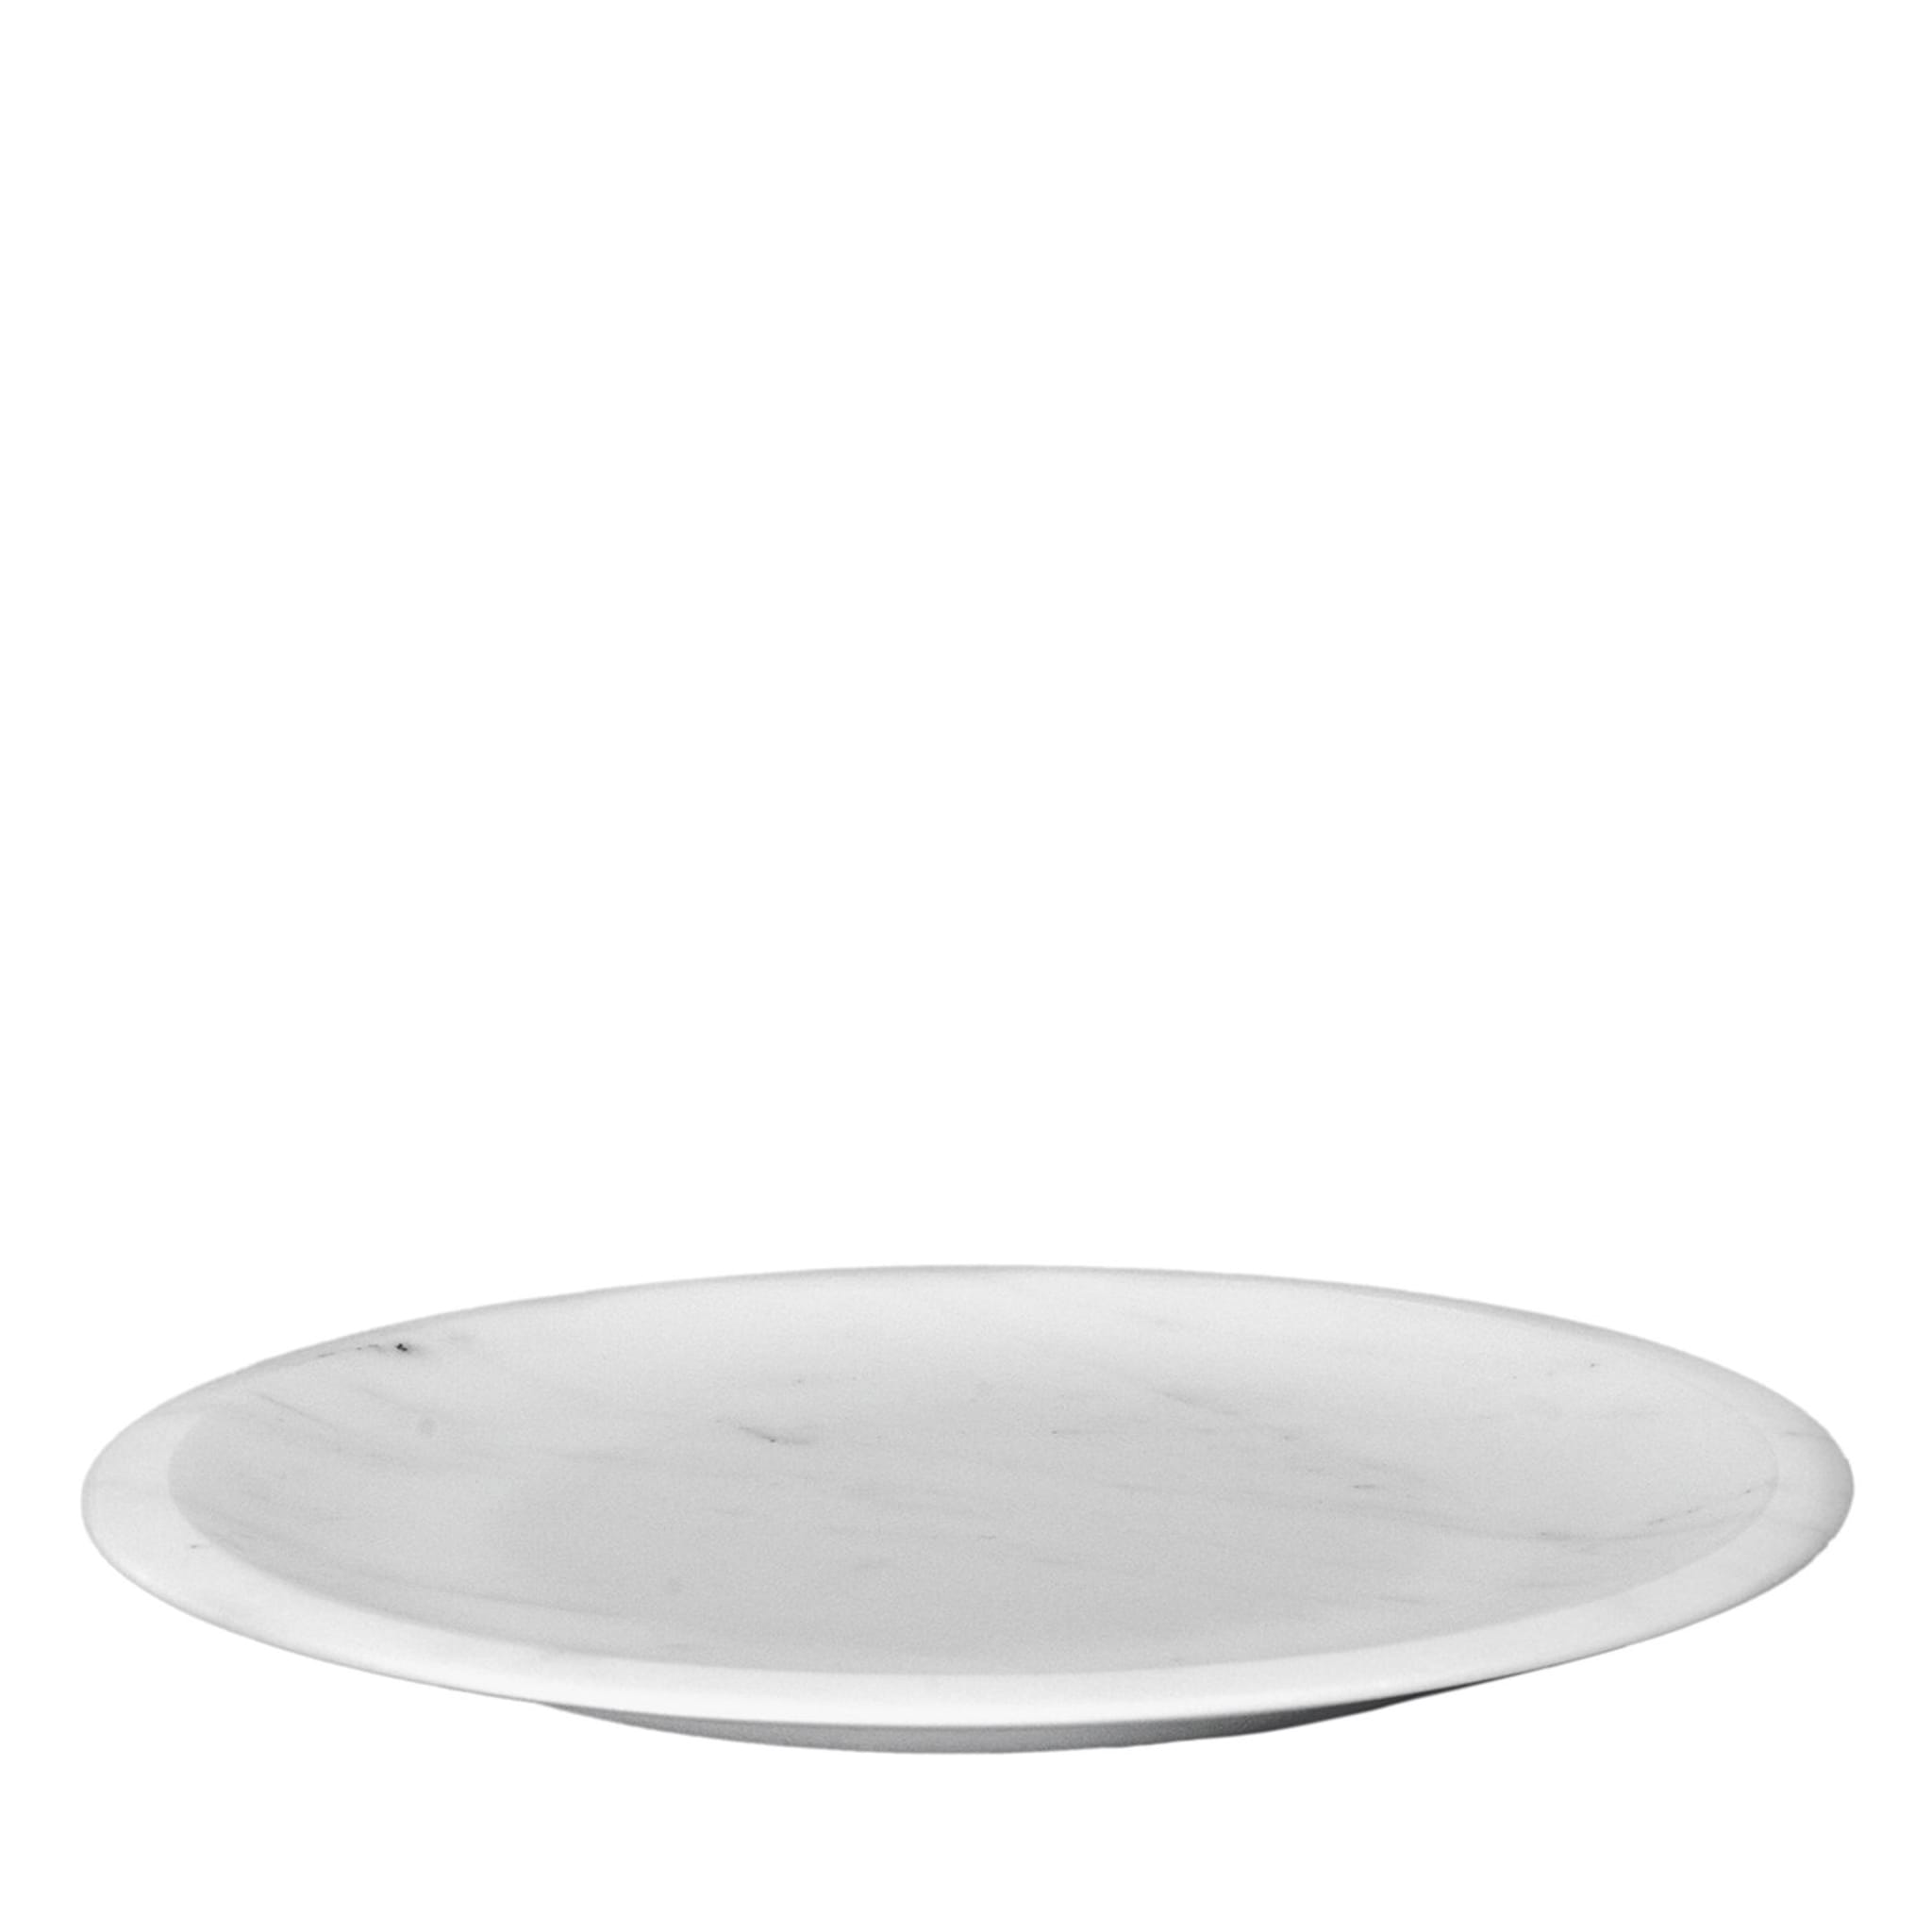 Piatto da portata bianco di Carrara di Ivan Colominas #1 - Vista principale